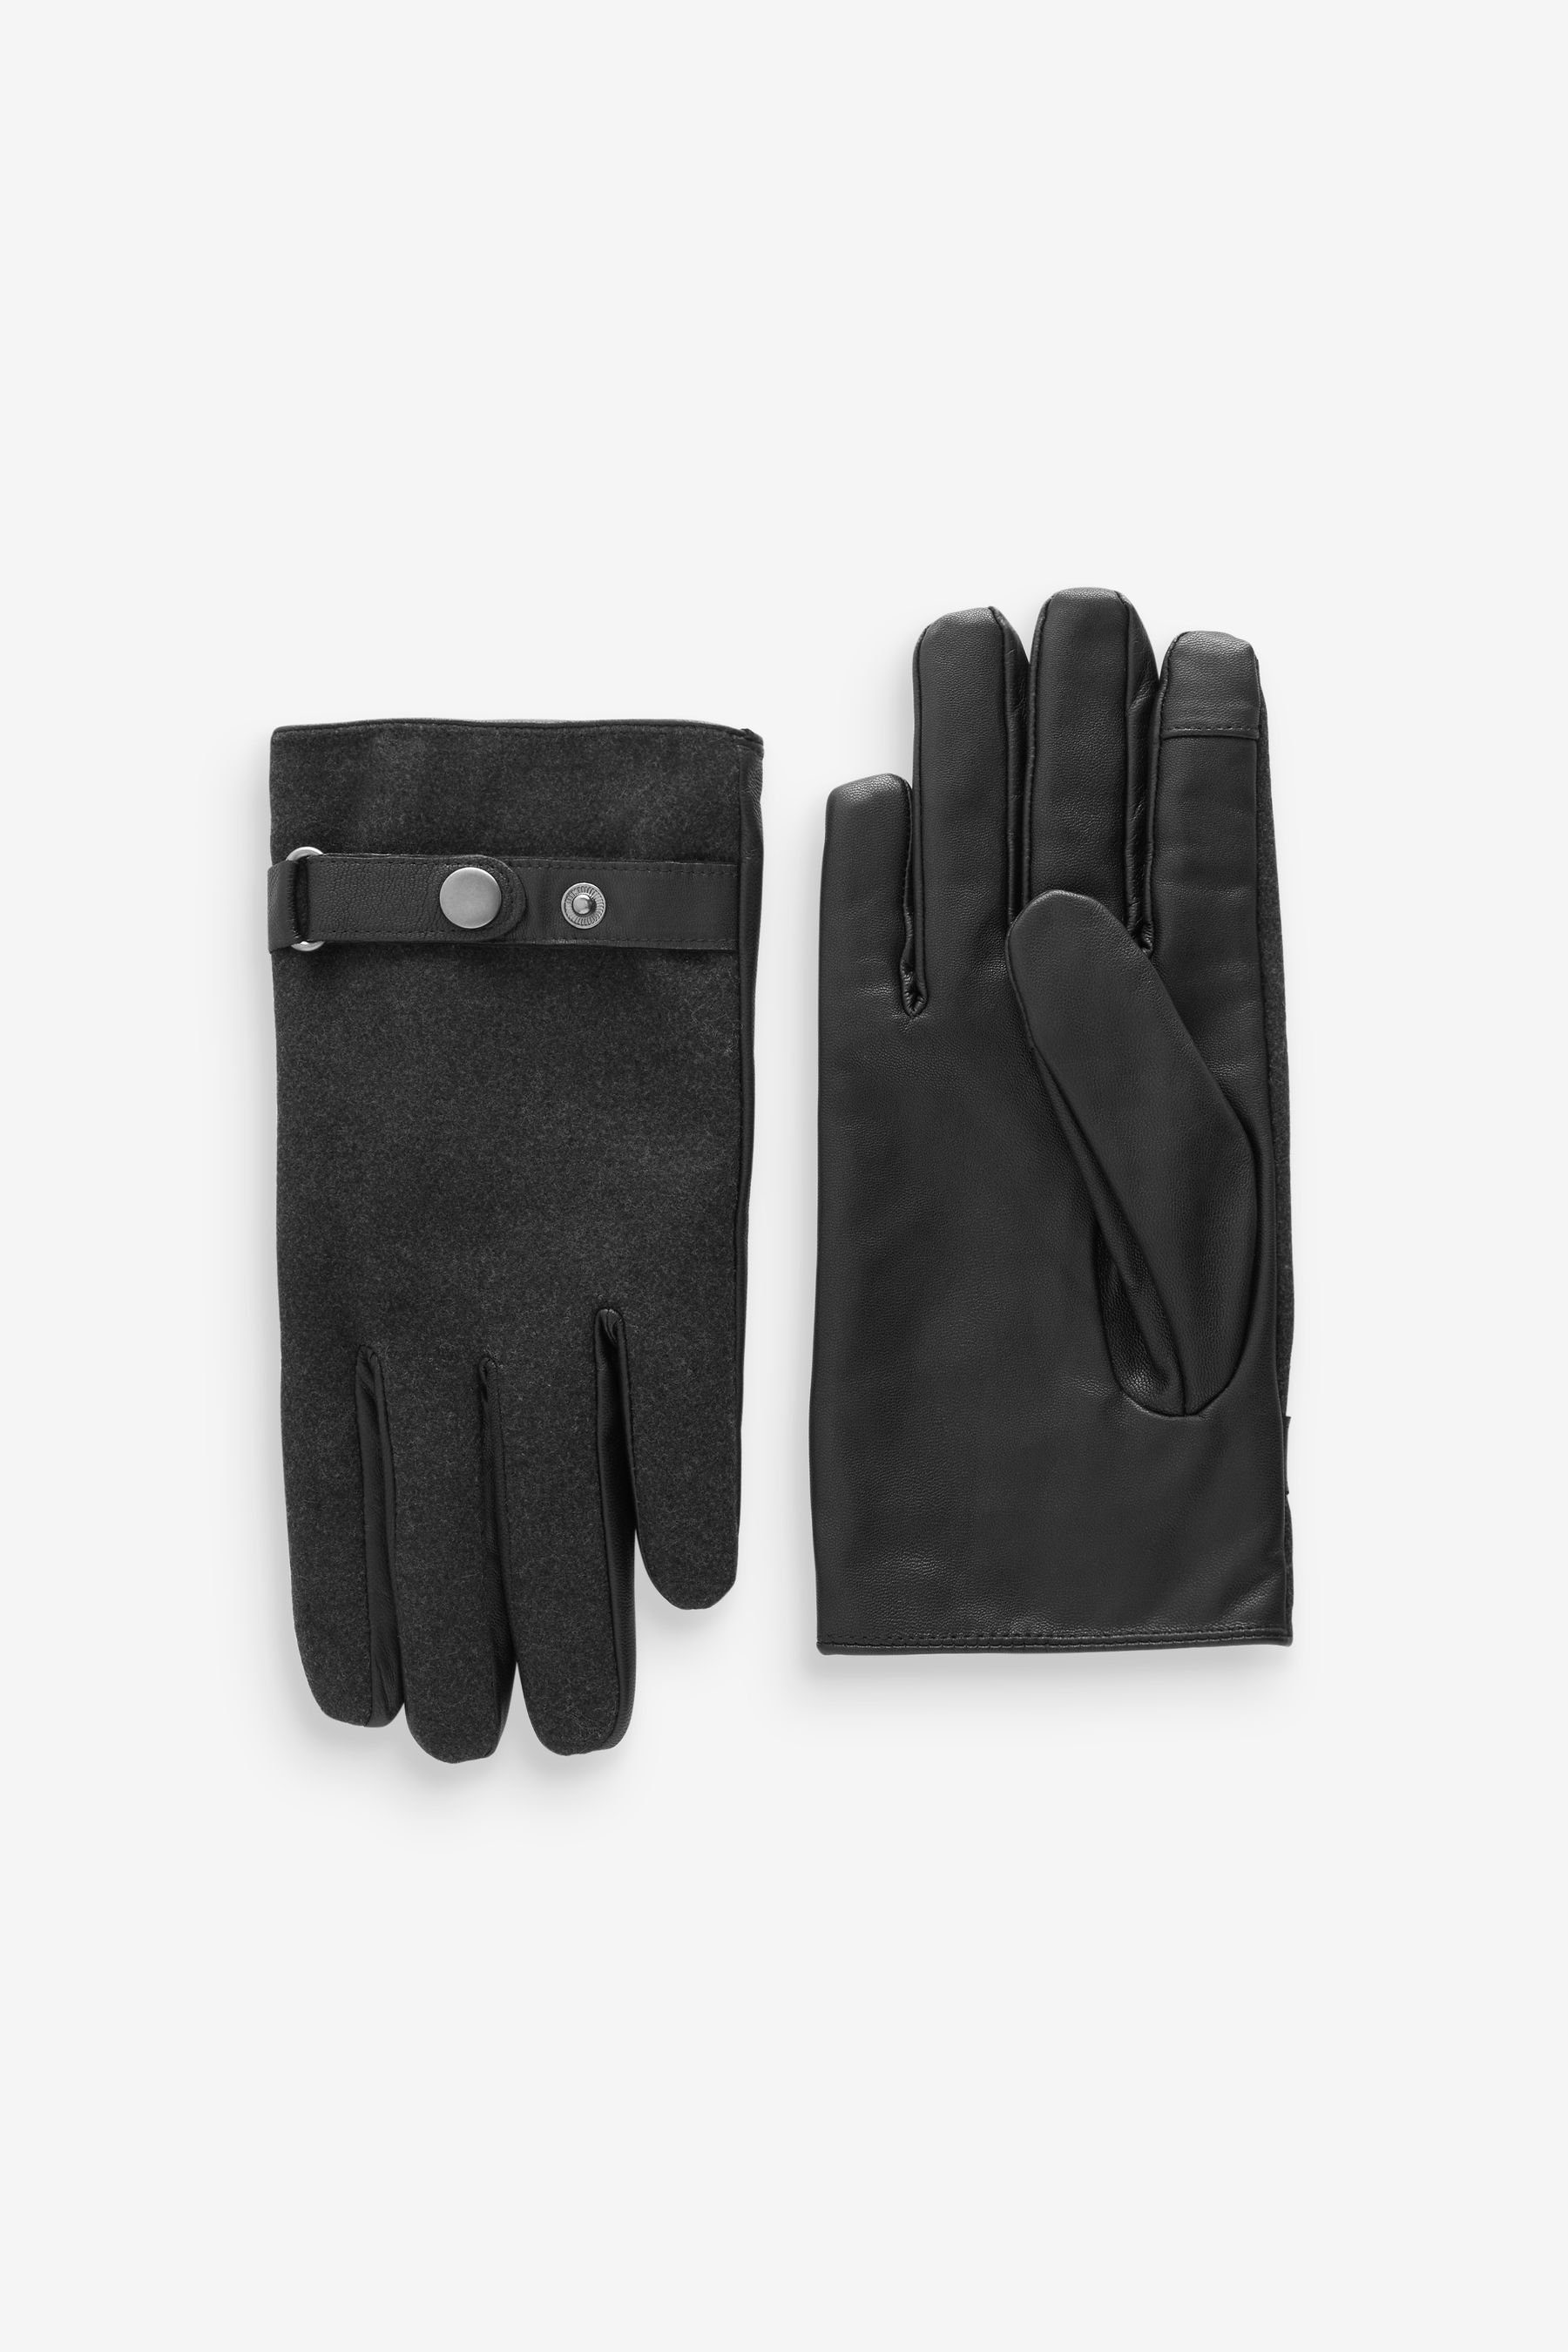 Next Lederhandschuhe Lederhandschuhe Charcoal Grey | Handschuhe